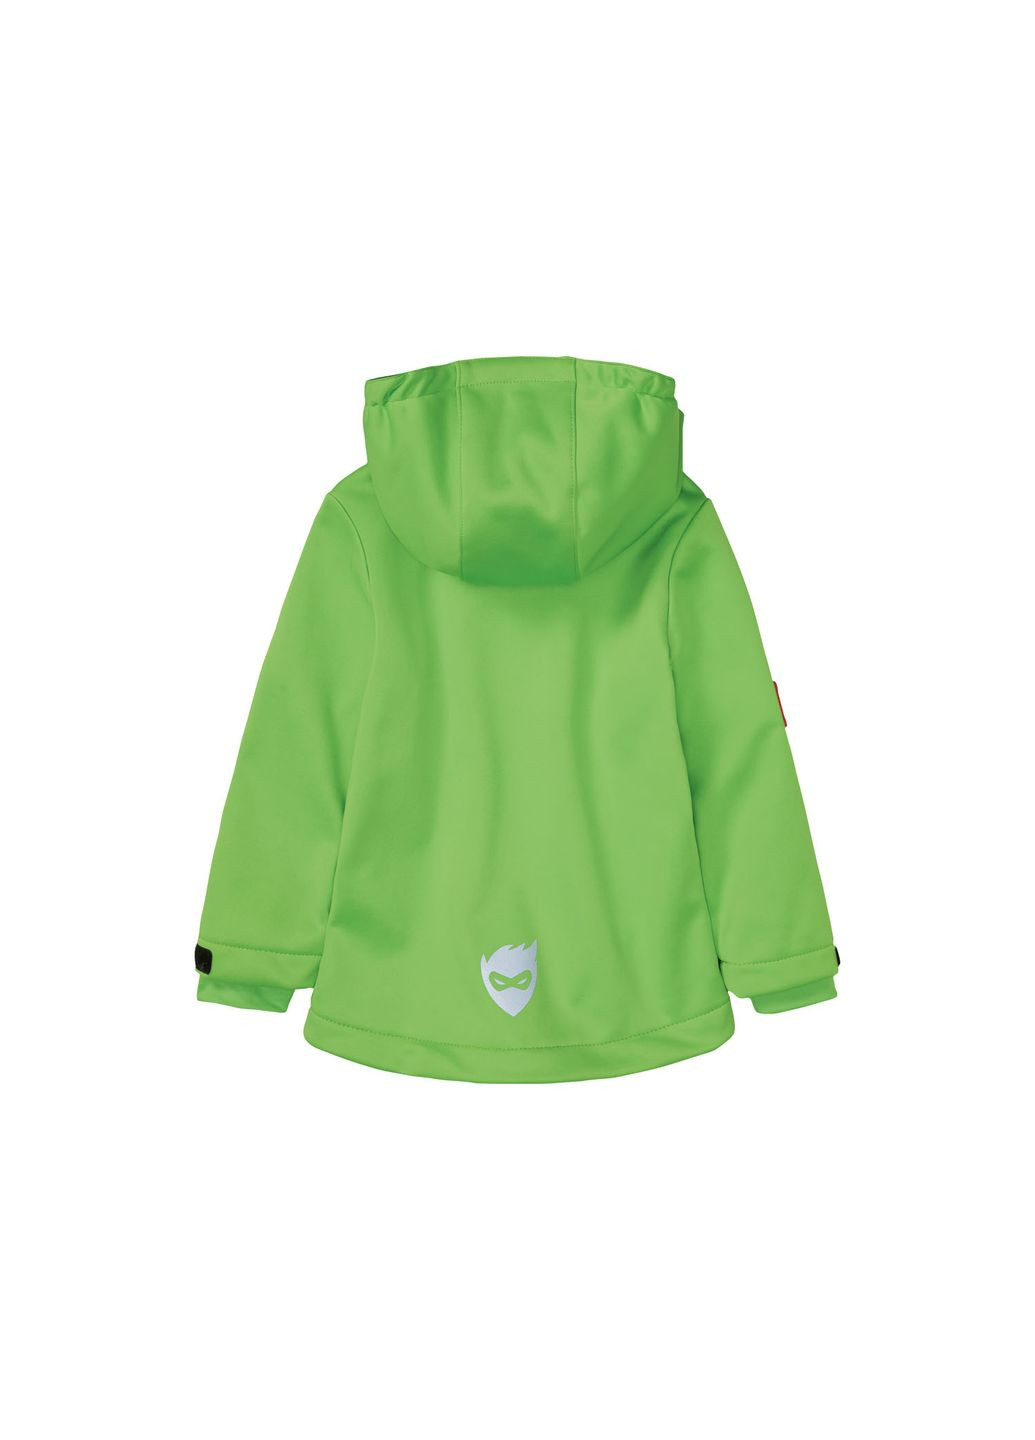 Салатовая демисезонная куртка softshell водоотталкивающая и ветрозащитная для мальчика dope dyed 375430 Lupilu